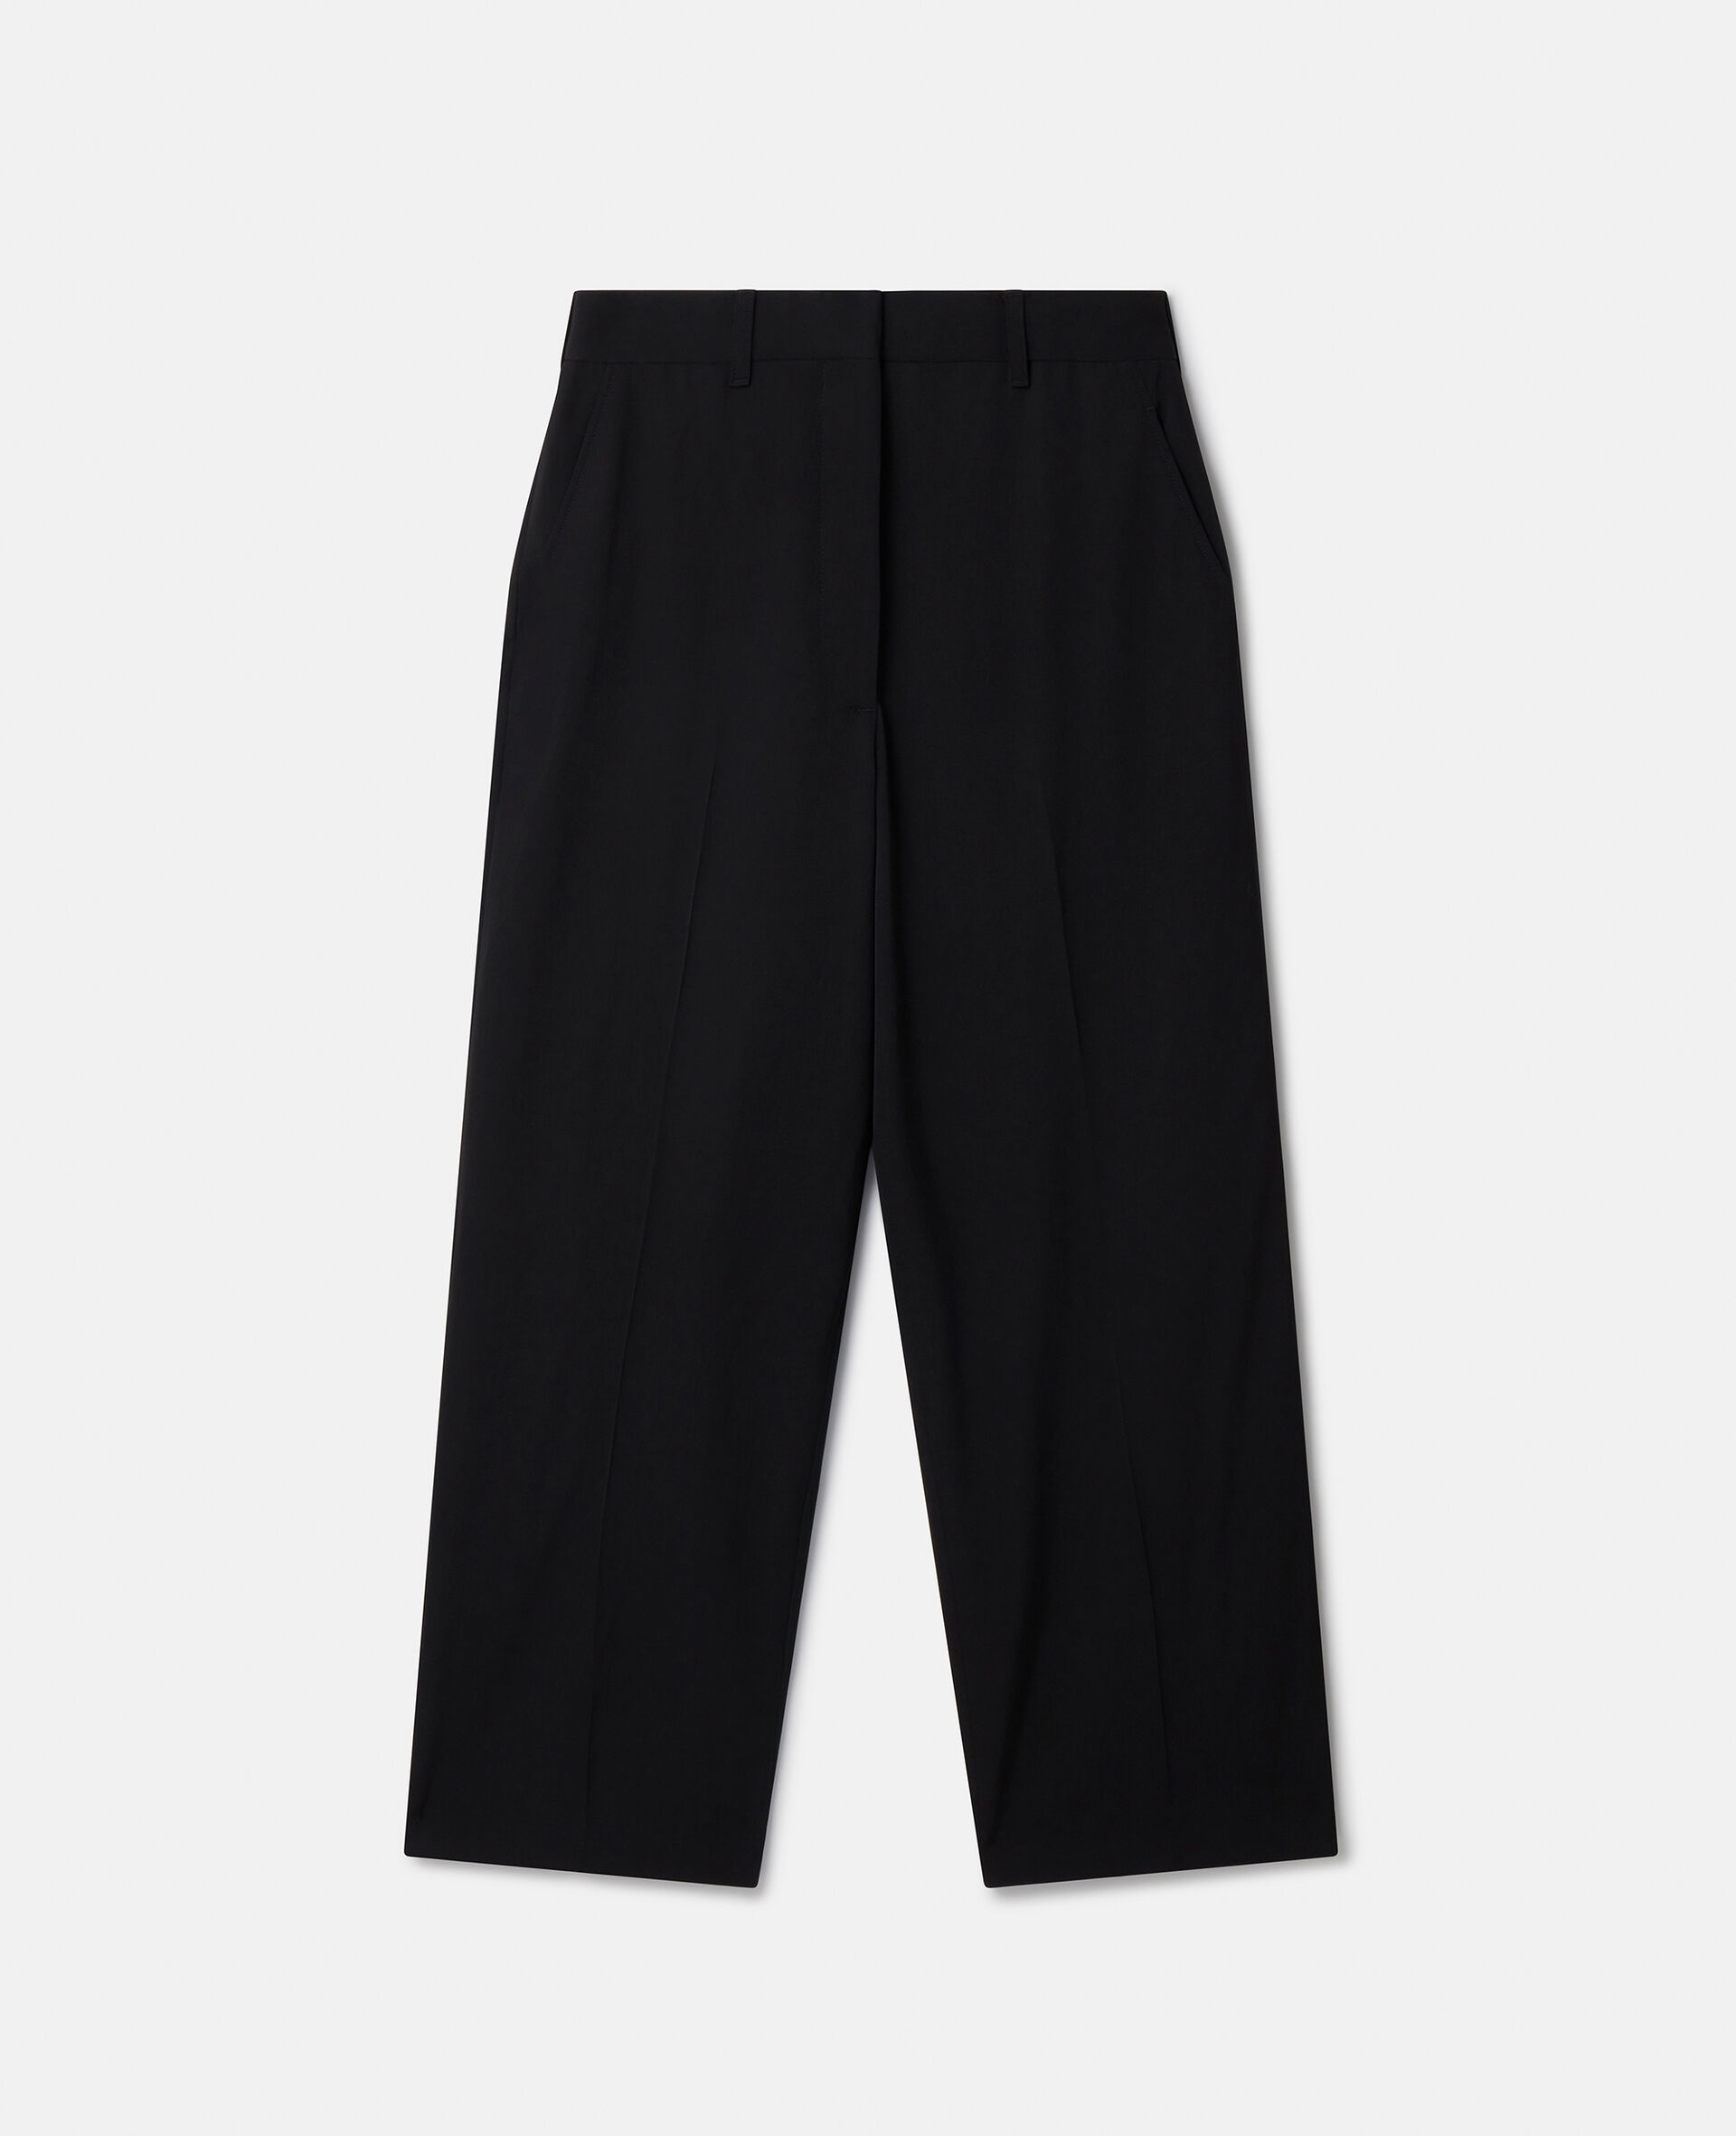 Pantalon de tailleur court en laine-Noir-medium